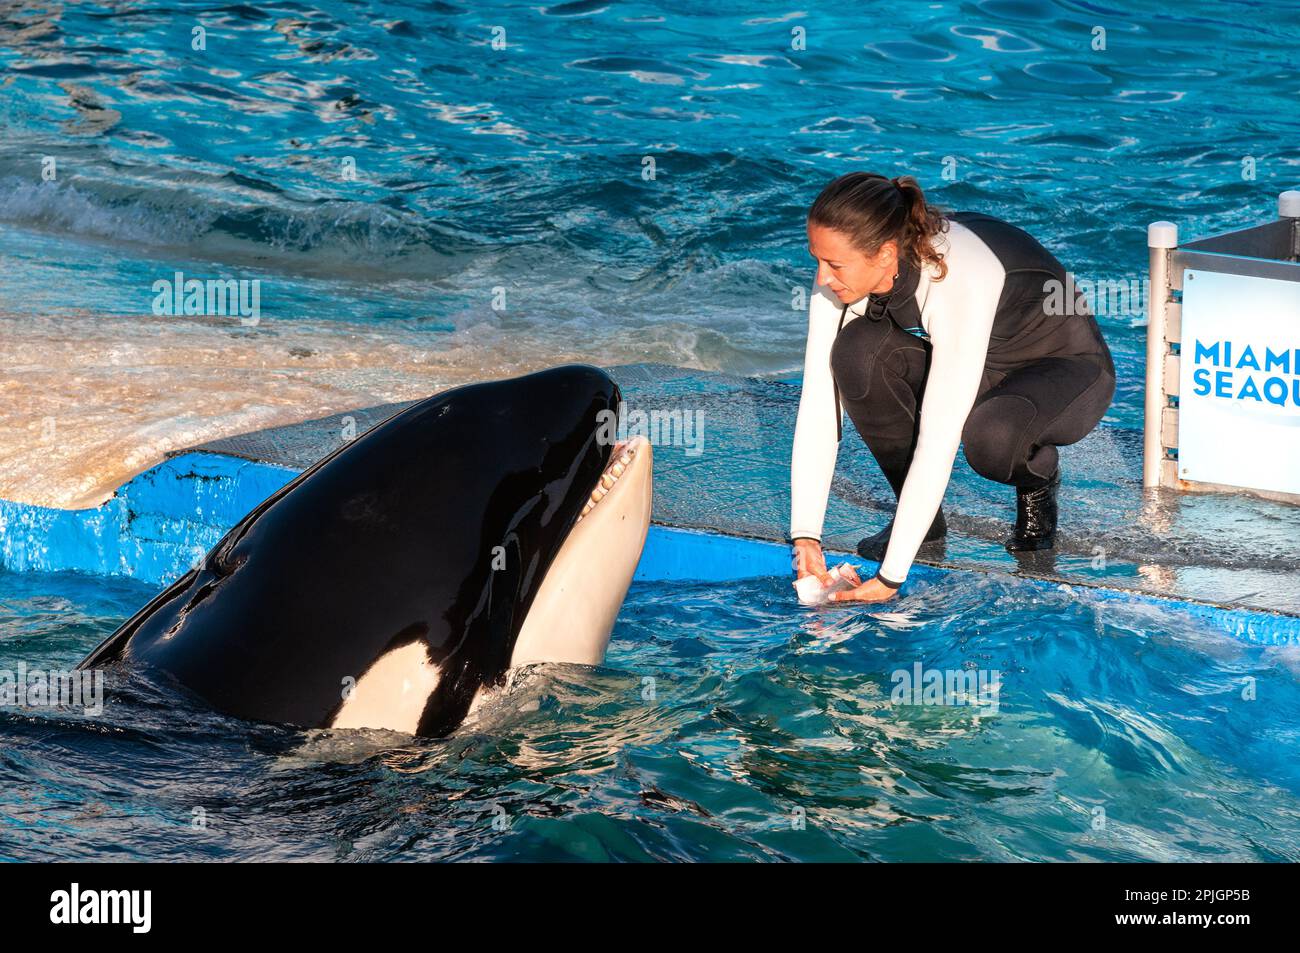 MIAMI US - 24. JANUAR 2014 : Lolita, der Killerwal im Miami Seaquarium. Gegründet im Jahr 1955, das älteste Ozeanarium der Vereinigten Staaten, das Fazil Stockfoto